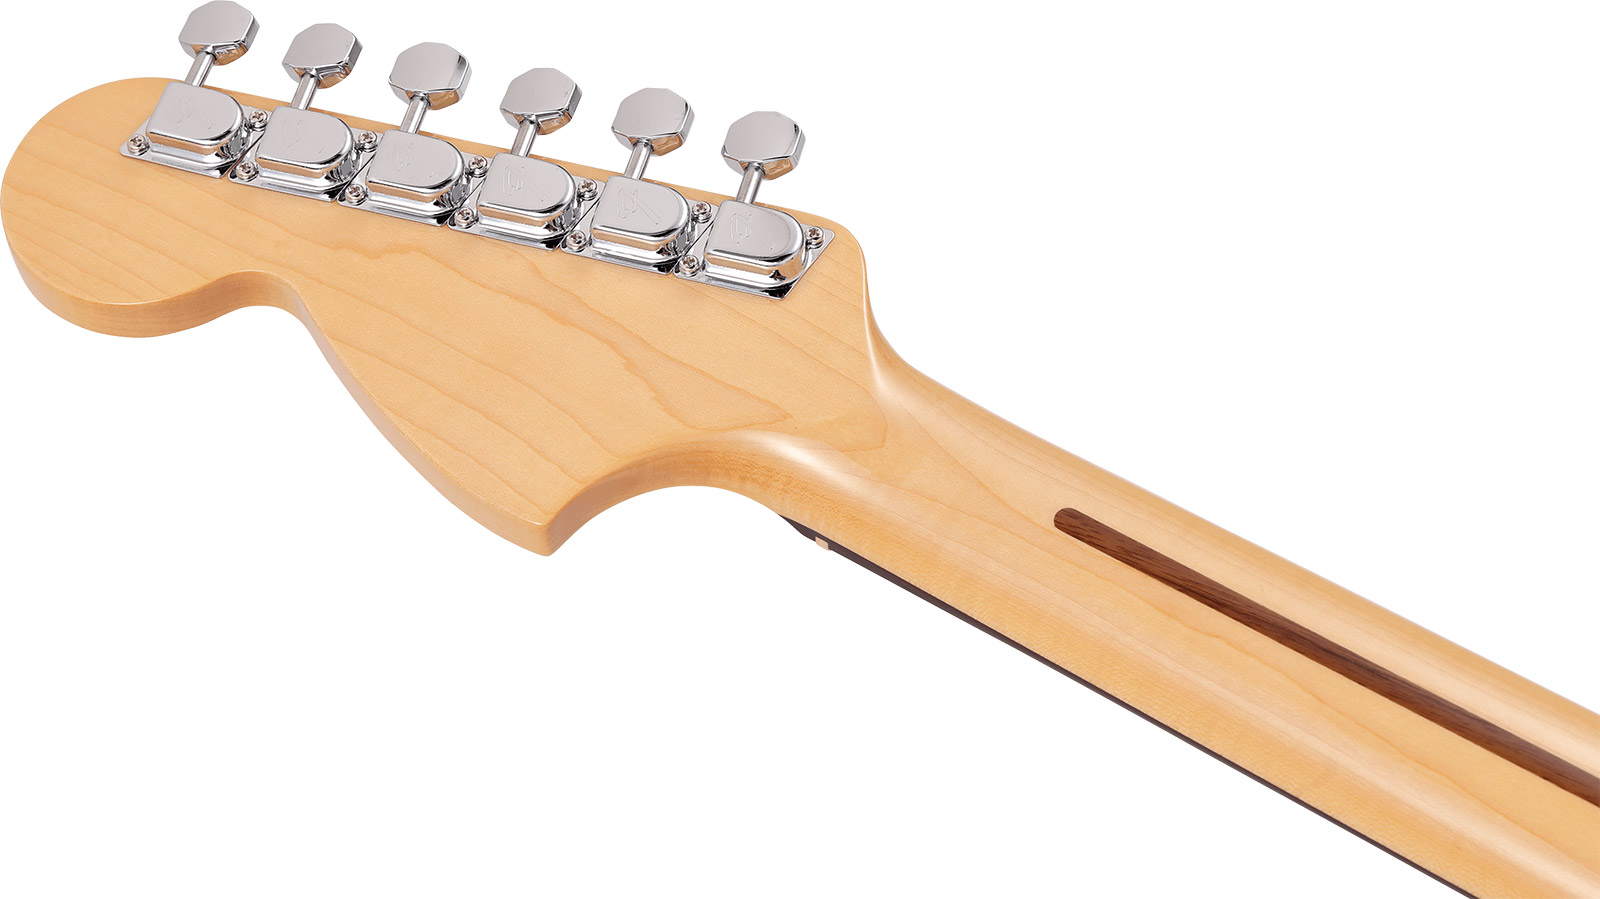 Fender Strat International Color Ltd Jap 3s Trem Rw - Capri Orange - Str shape electric guitar - Variation 3